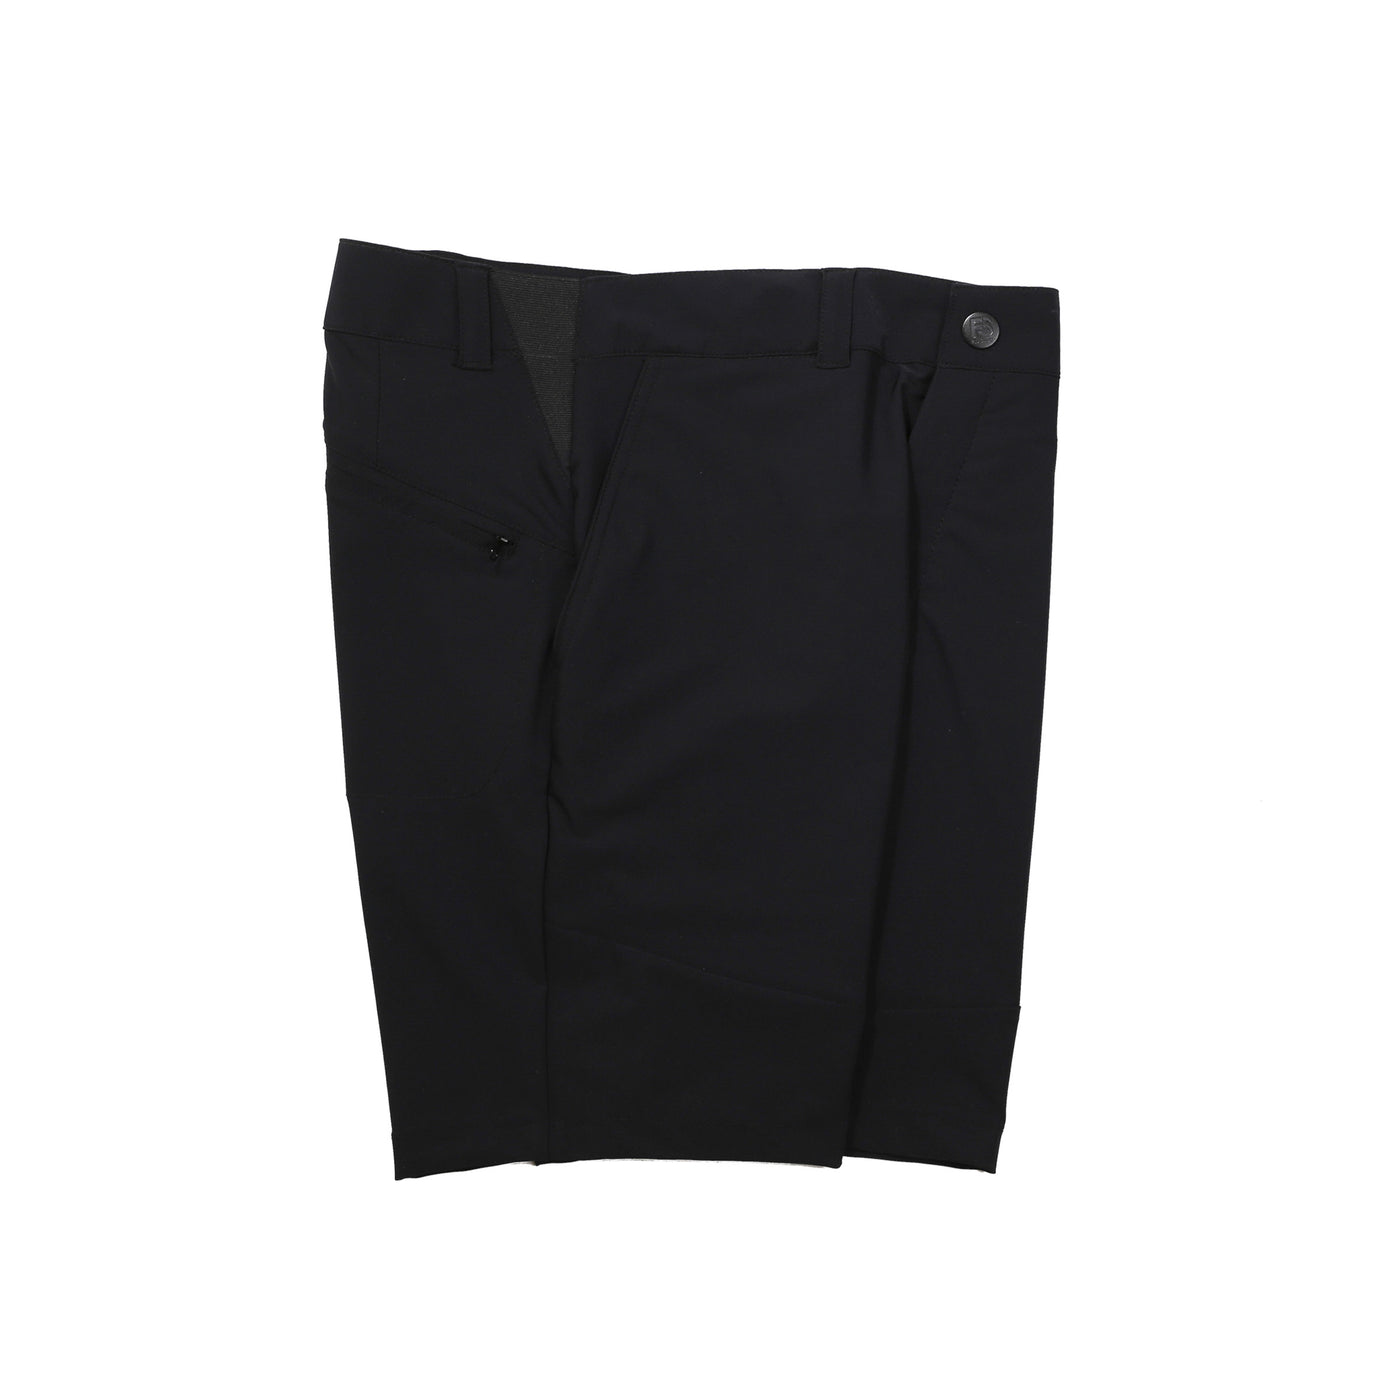 Chino Hybrid Shorts